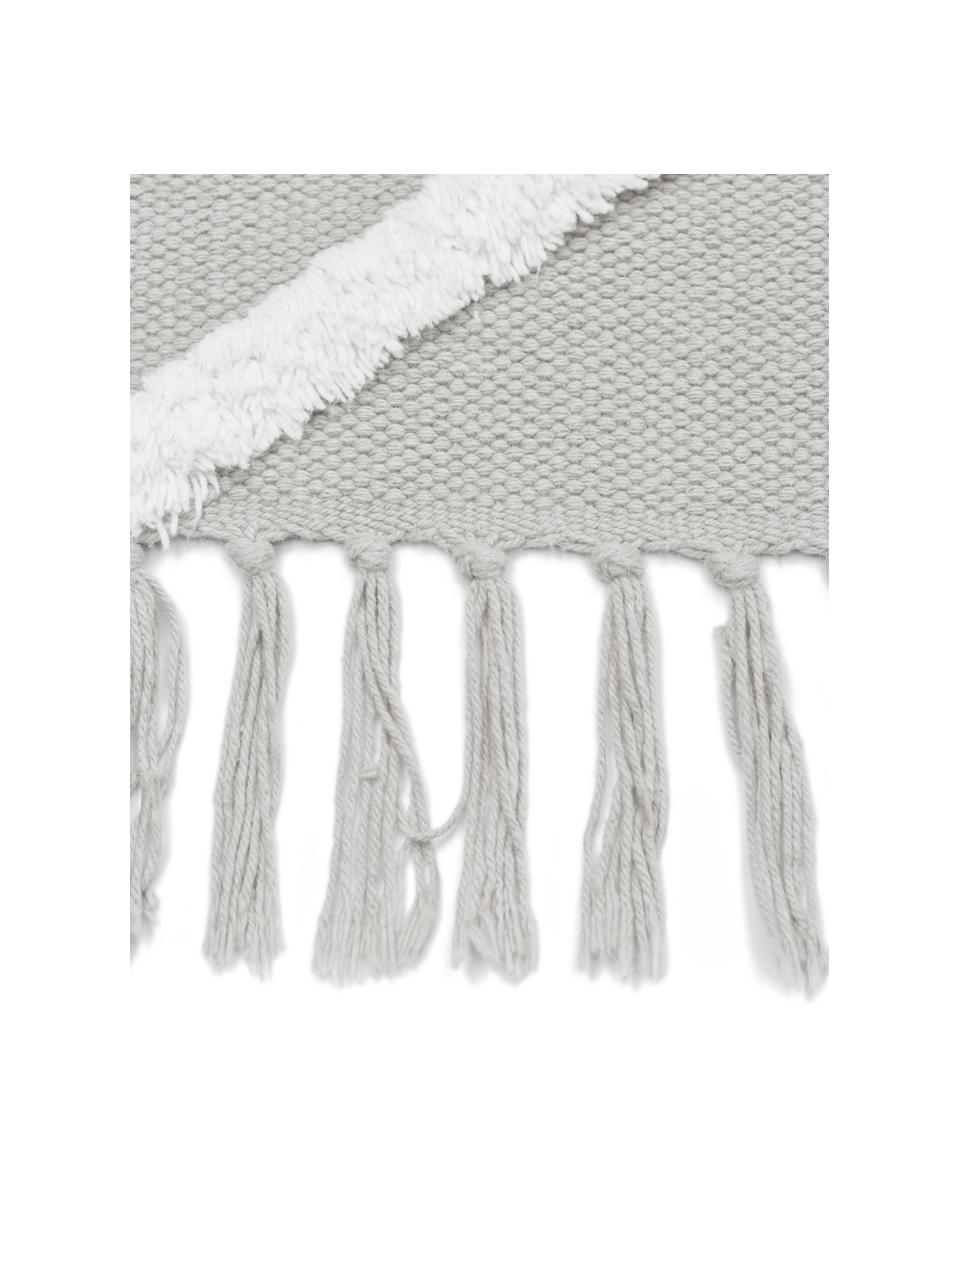 Handgewebter Baumwollläufer Ziggy mit erhabener Hoch-Tief-Struktur, 100% Baumwolle, Grau & Cremeweiss, gemustert, B 80 x L 200 cm